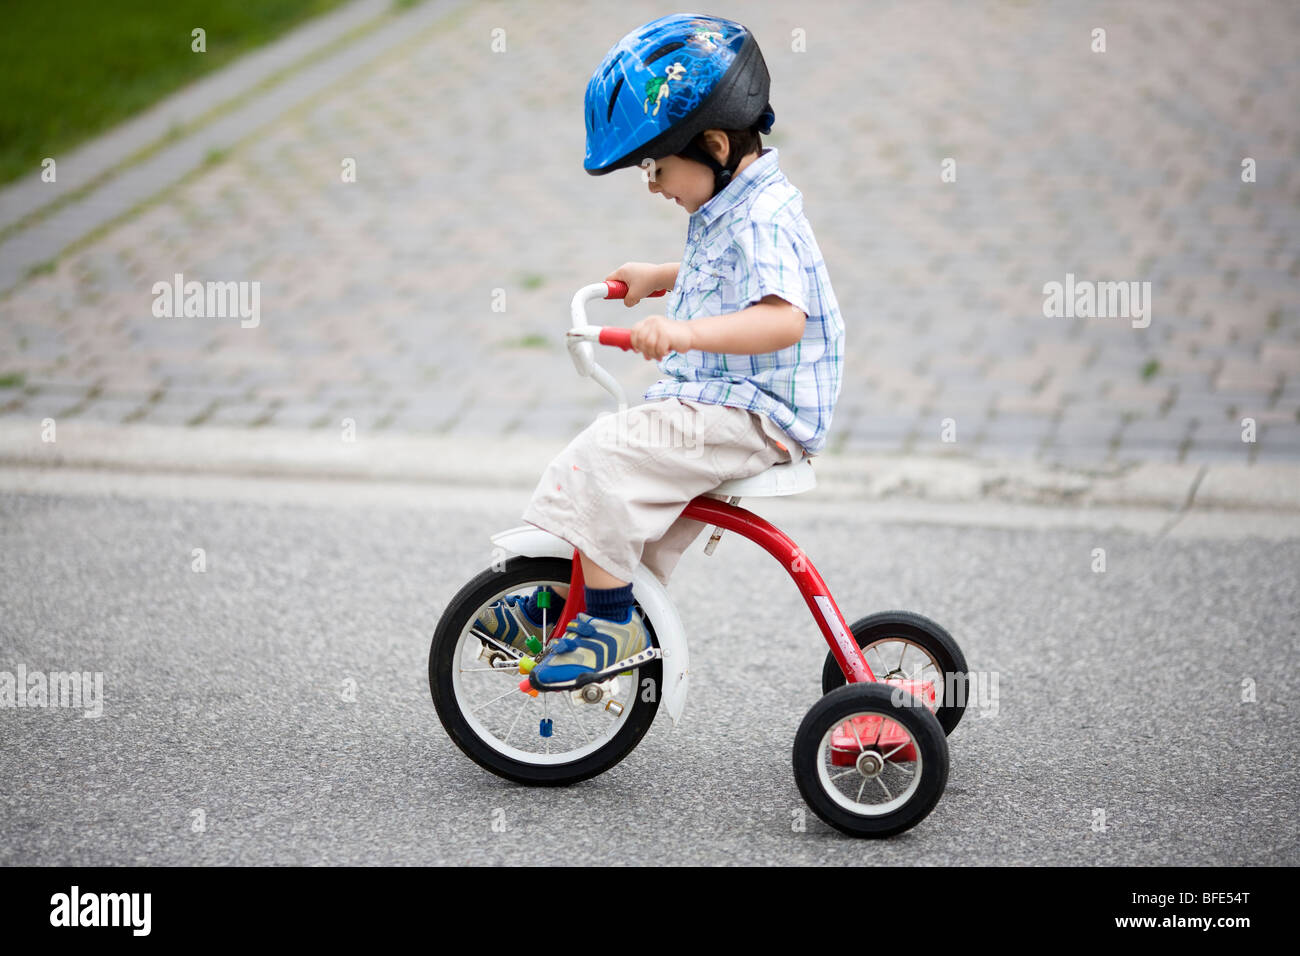 Garçon de 2 ans et demi sur un tricycle et portant un casque, Montréal, Québec, Canada Banque D'Images